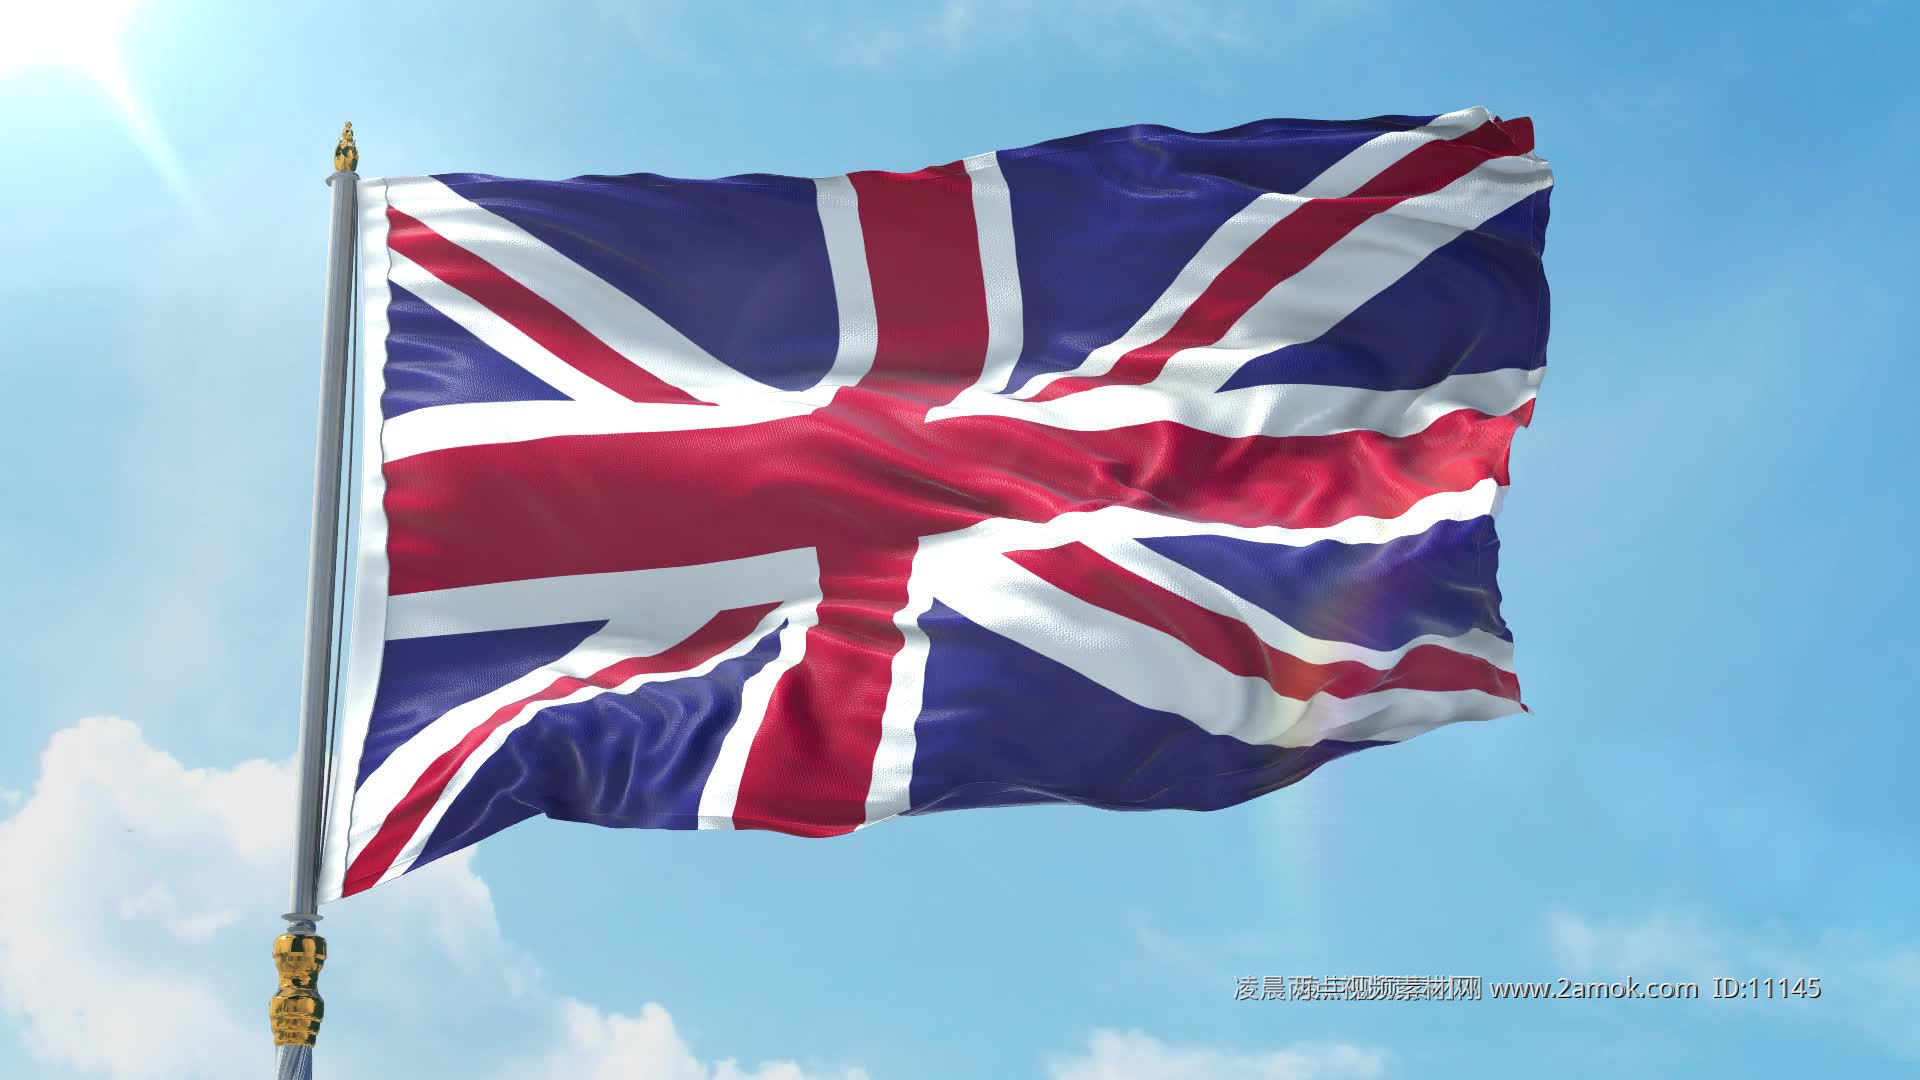 壁纸 英国国旗，纹理 5120x2880 UHD 5K 高清壁纸, 图片, 照片